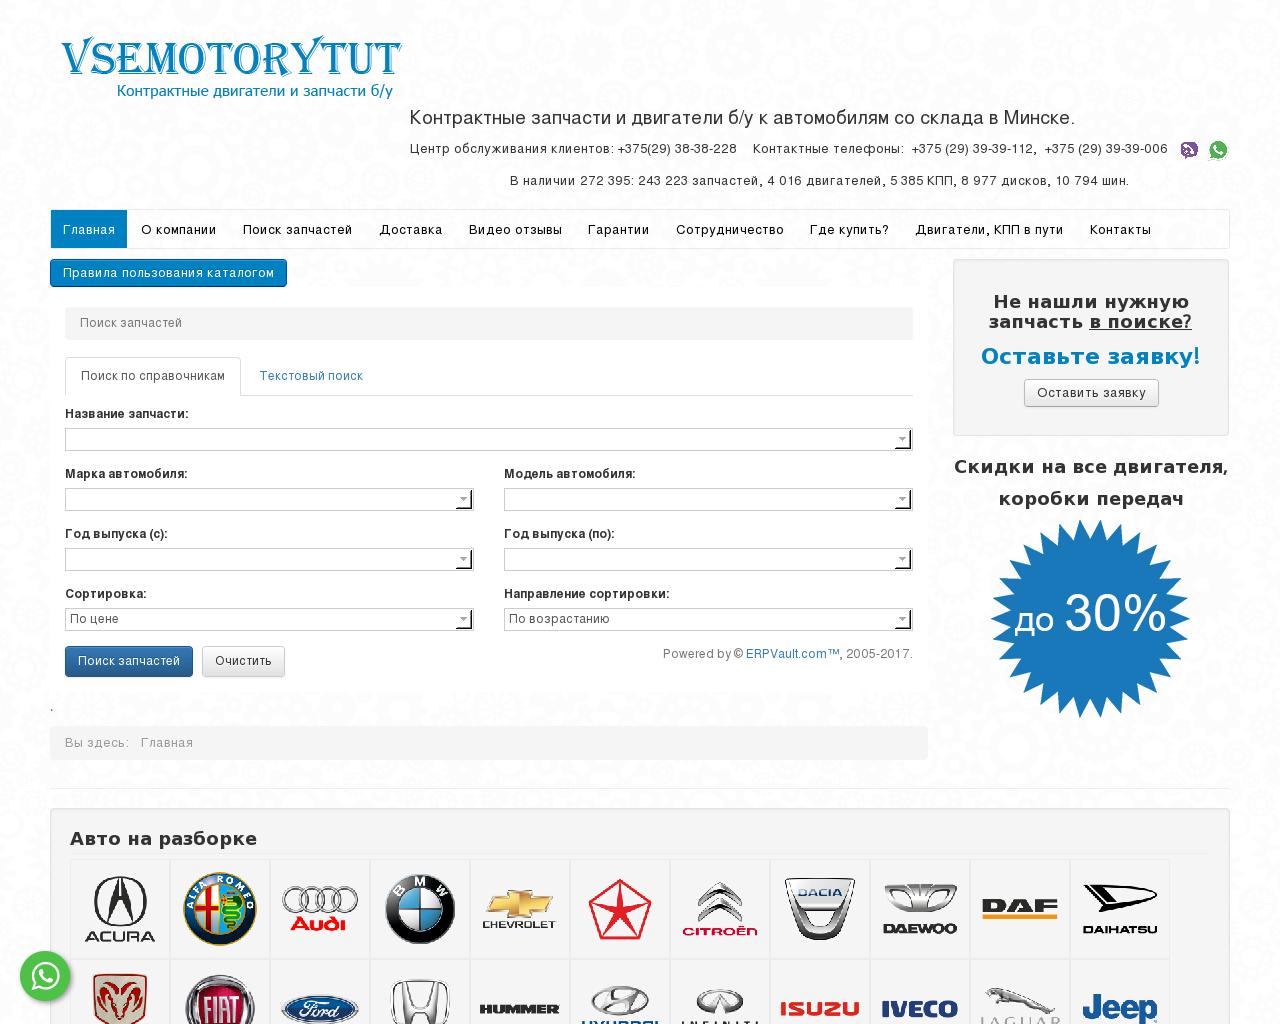 Изображение сайта vsemotorytut.ru в разрешении 1280x1024